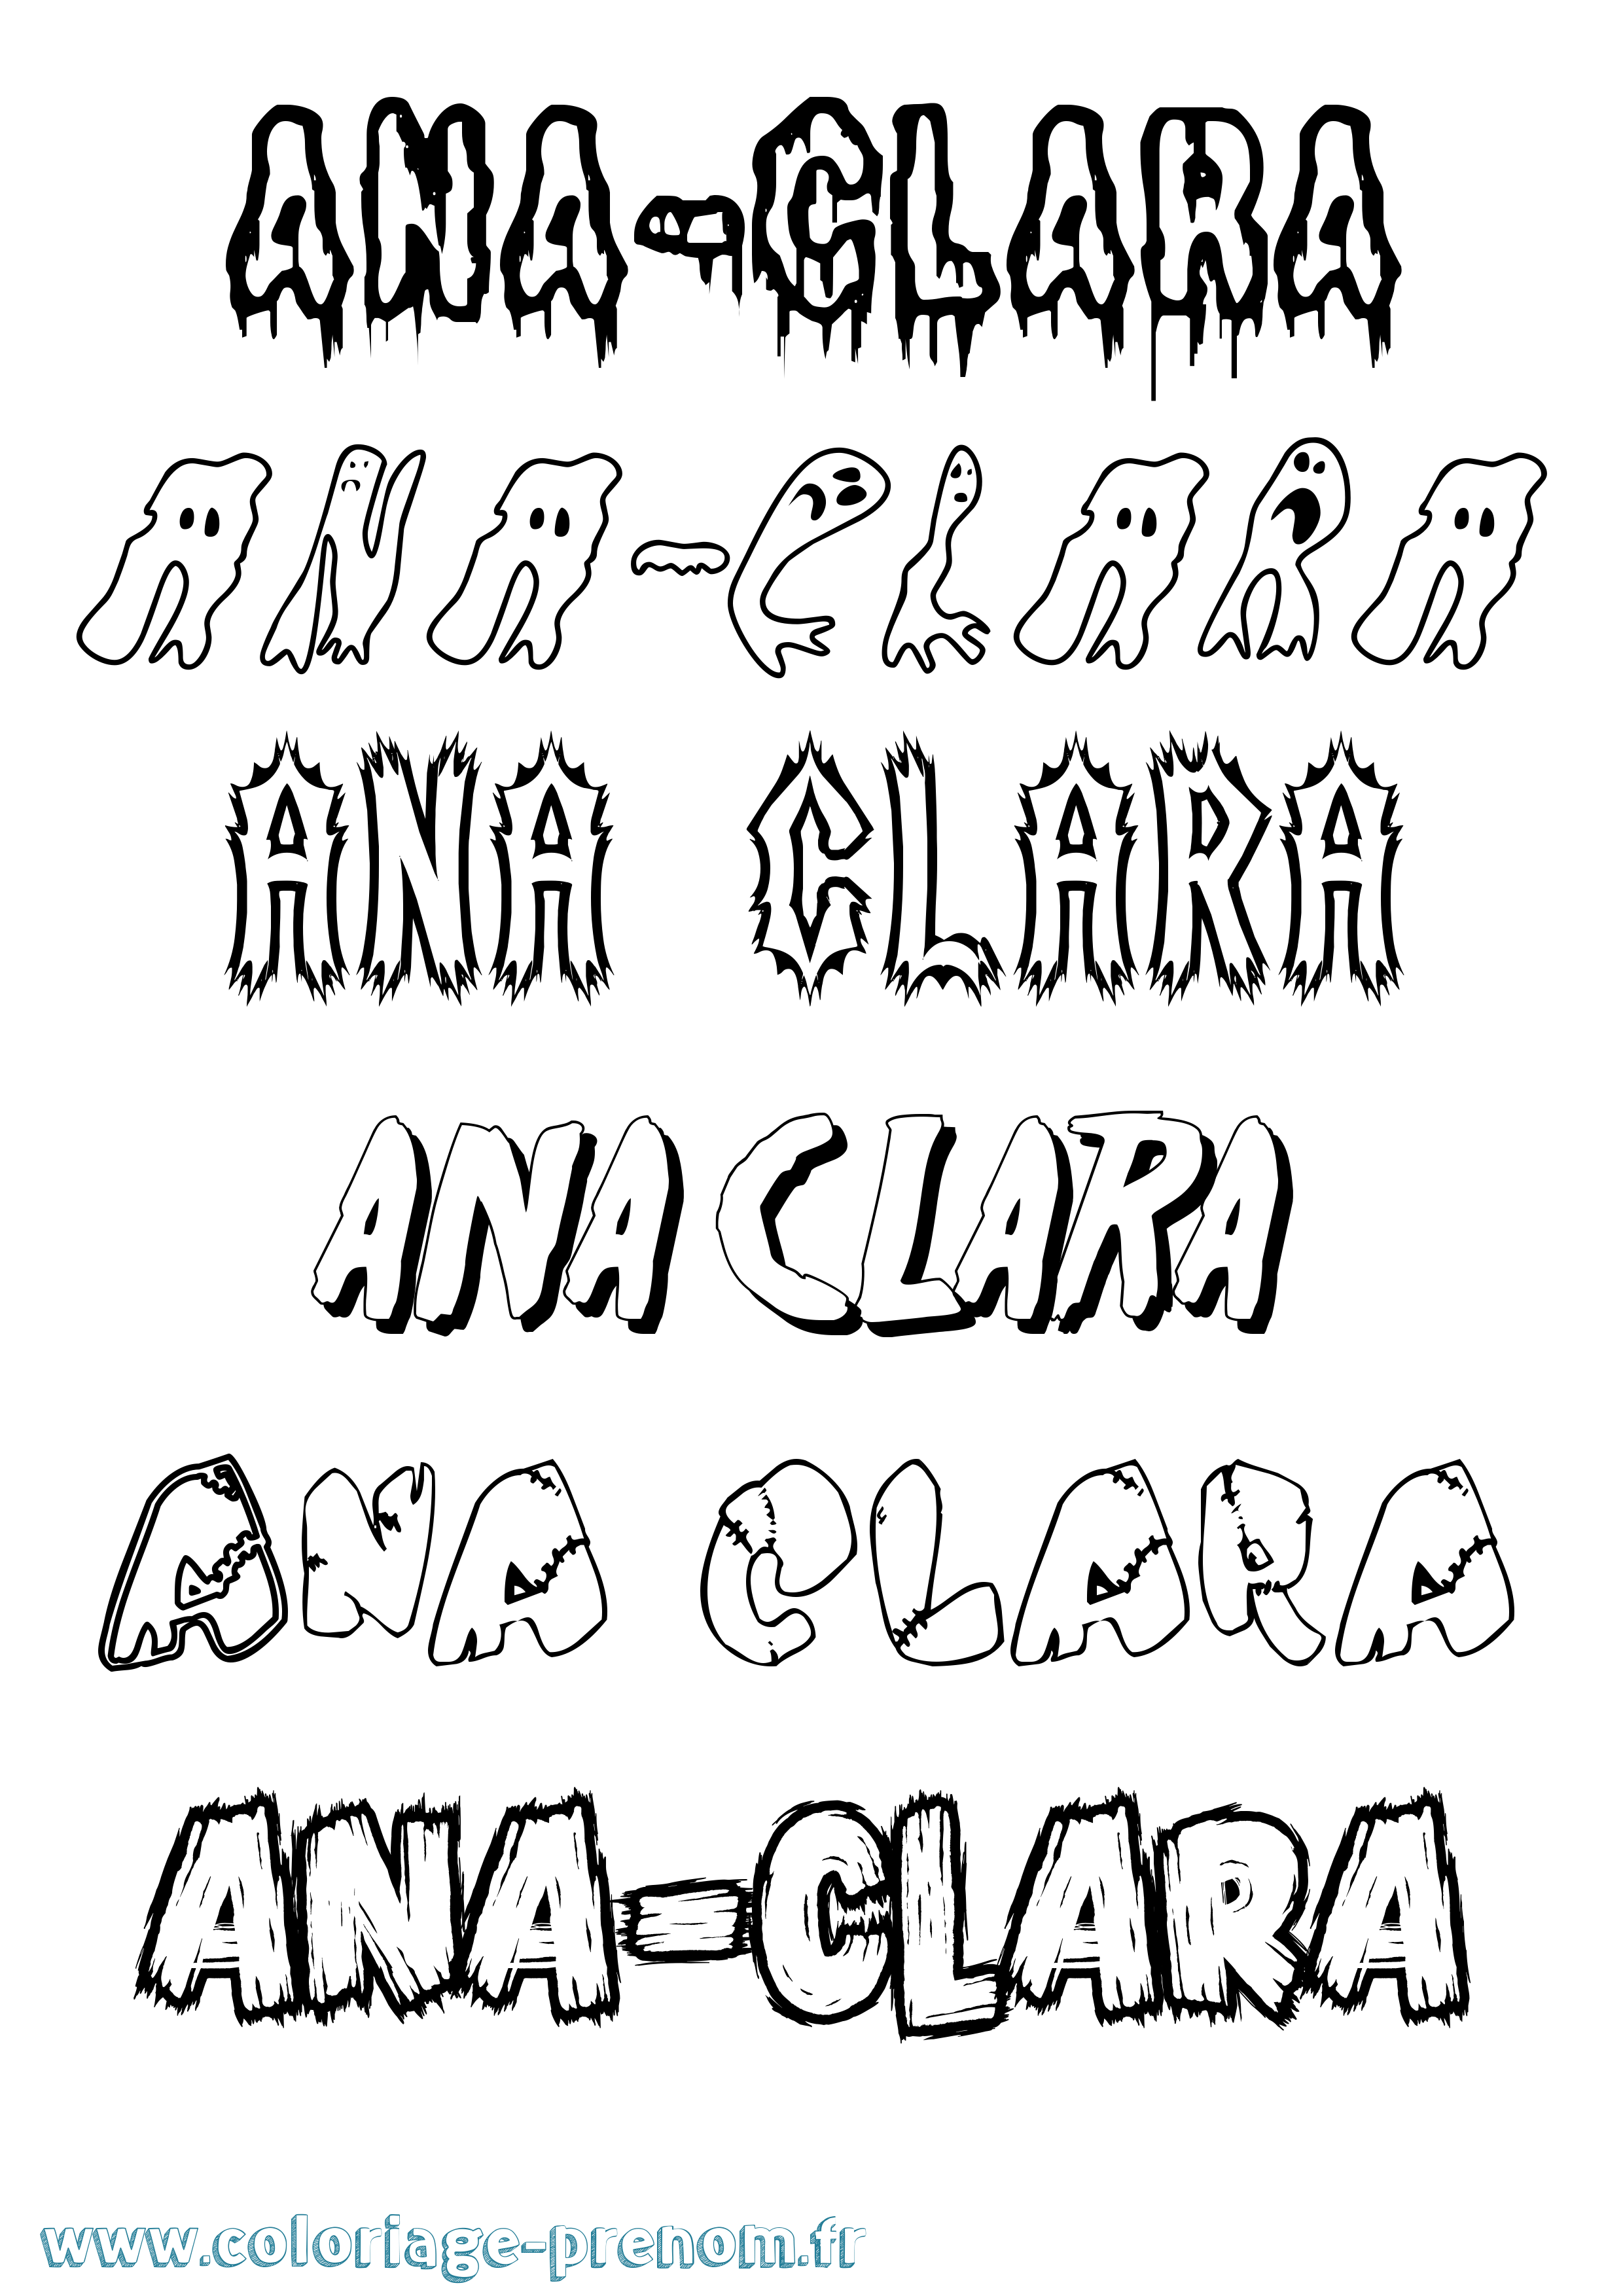 Coloriage prénom Ana-Clara Frisson